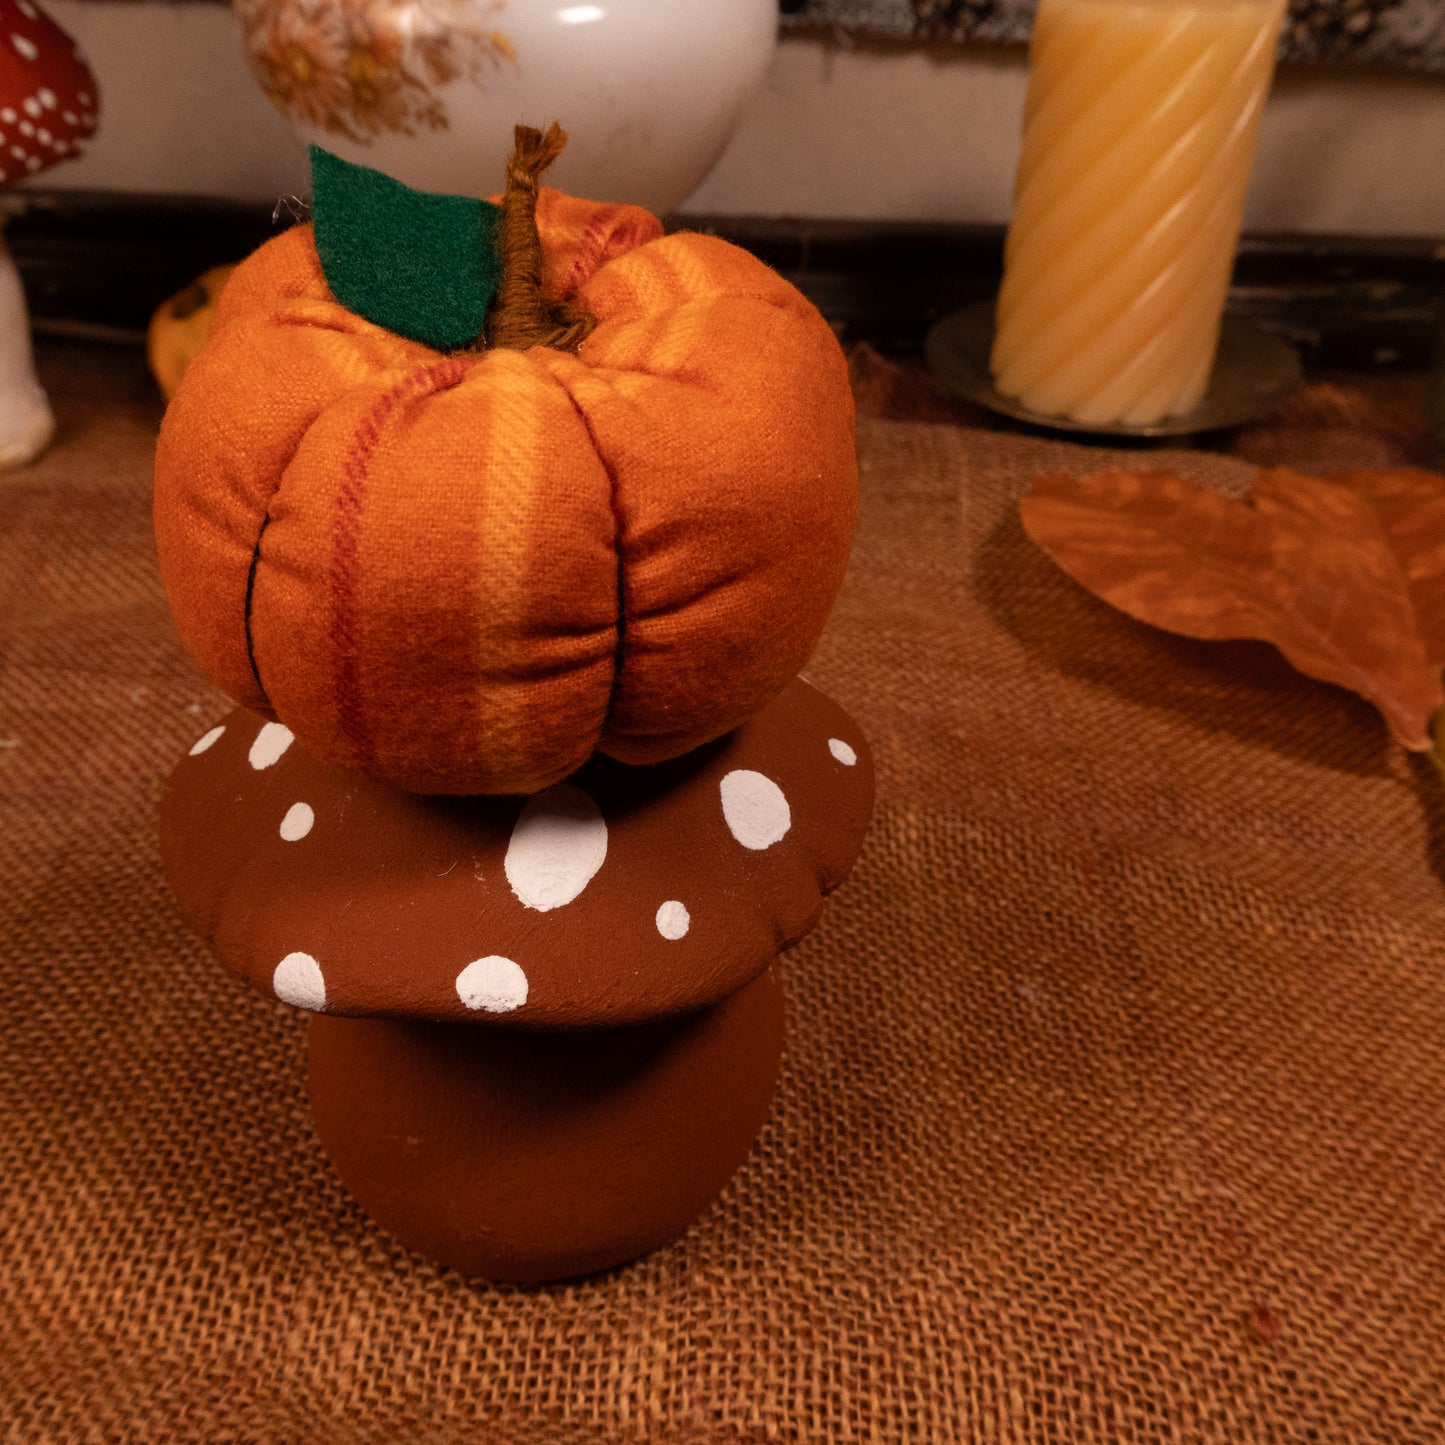 Decorative Pumpkin Pincushion